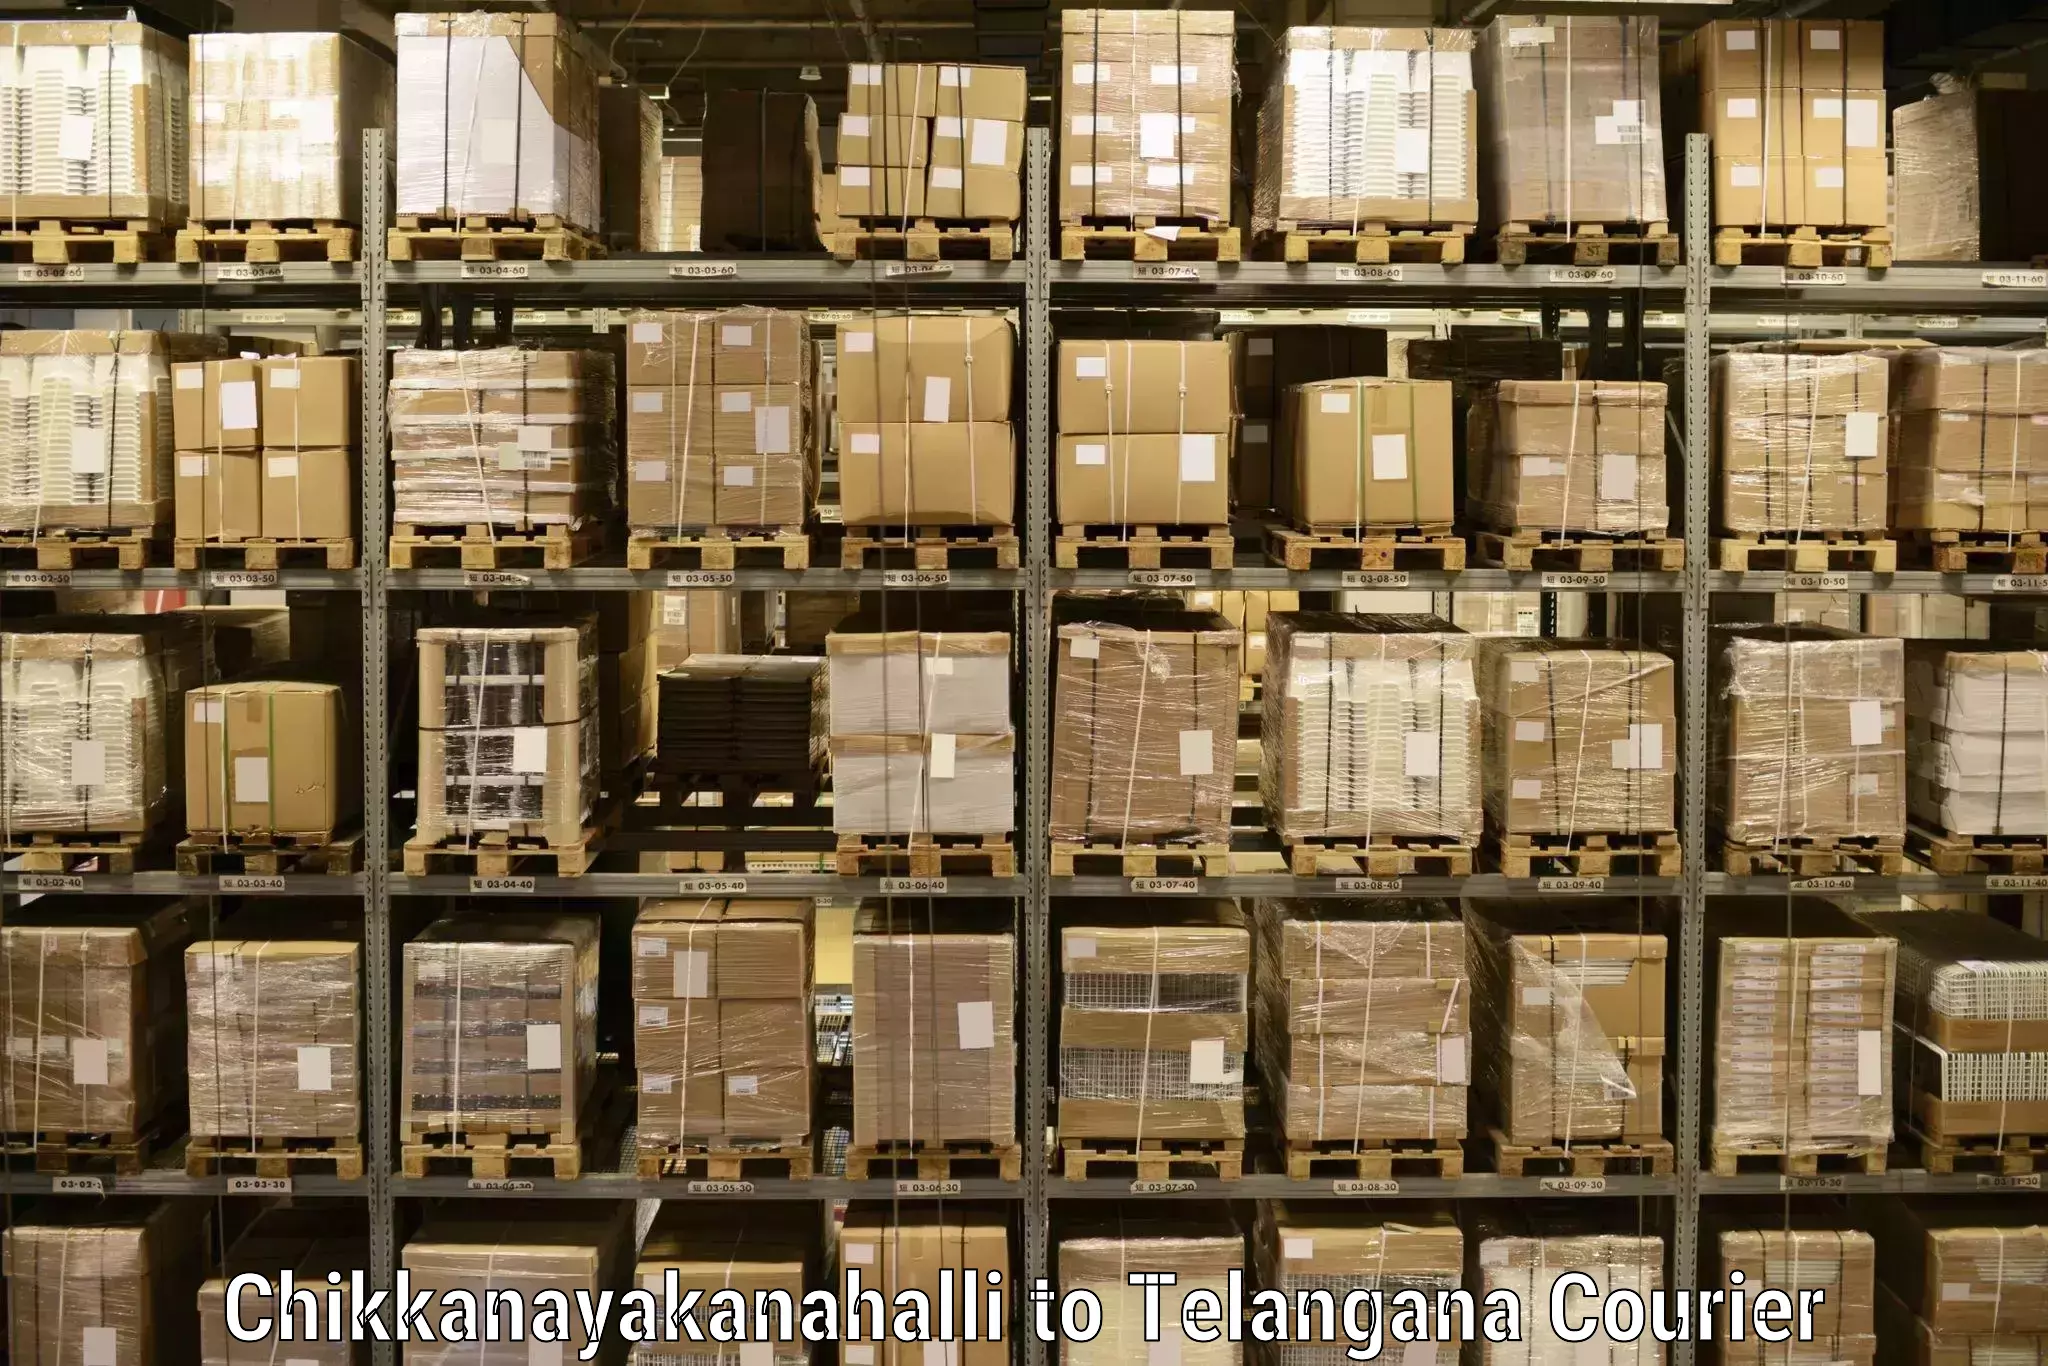 Cargo courier service Chikkanayakanahalli to Metpally